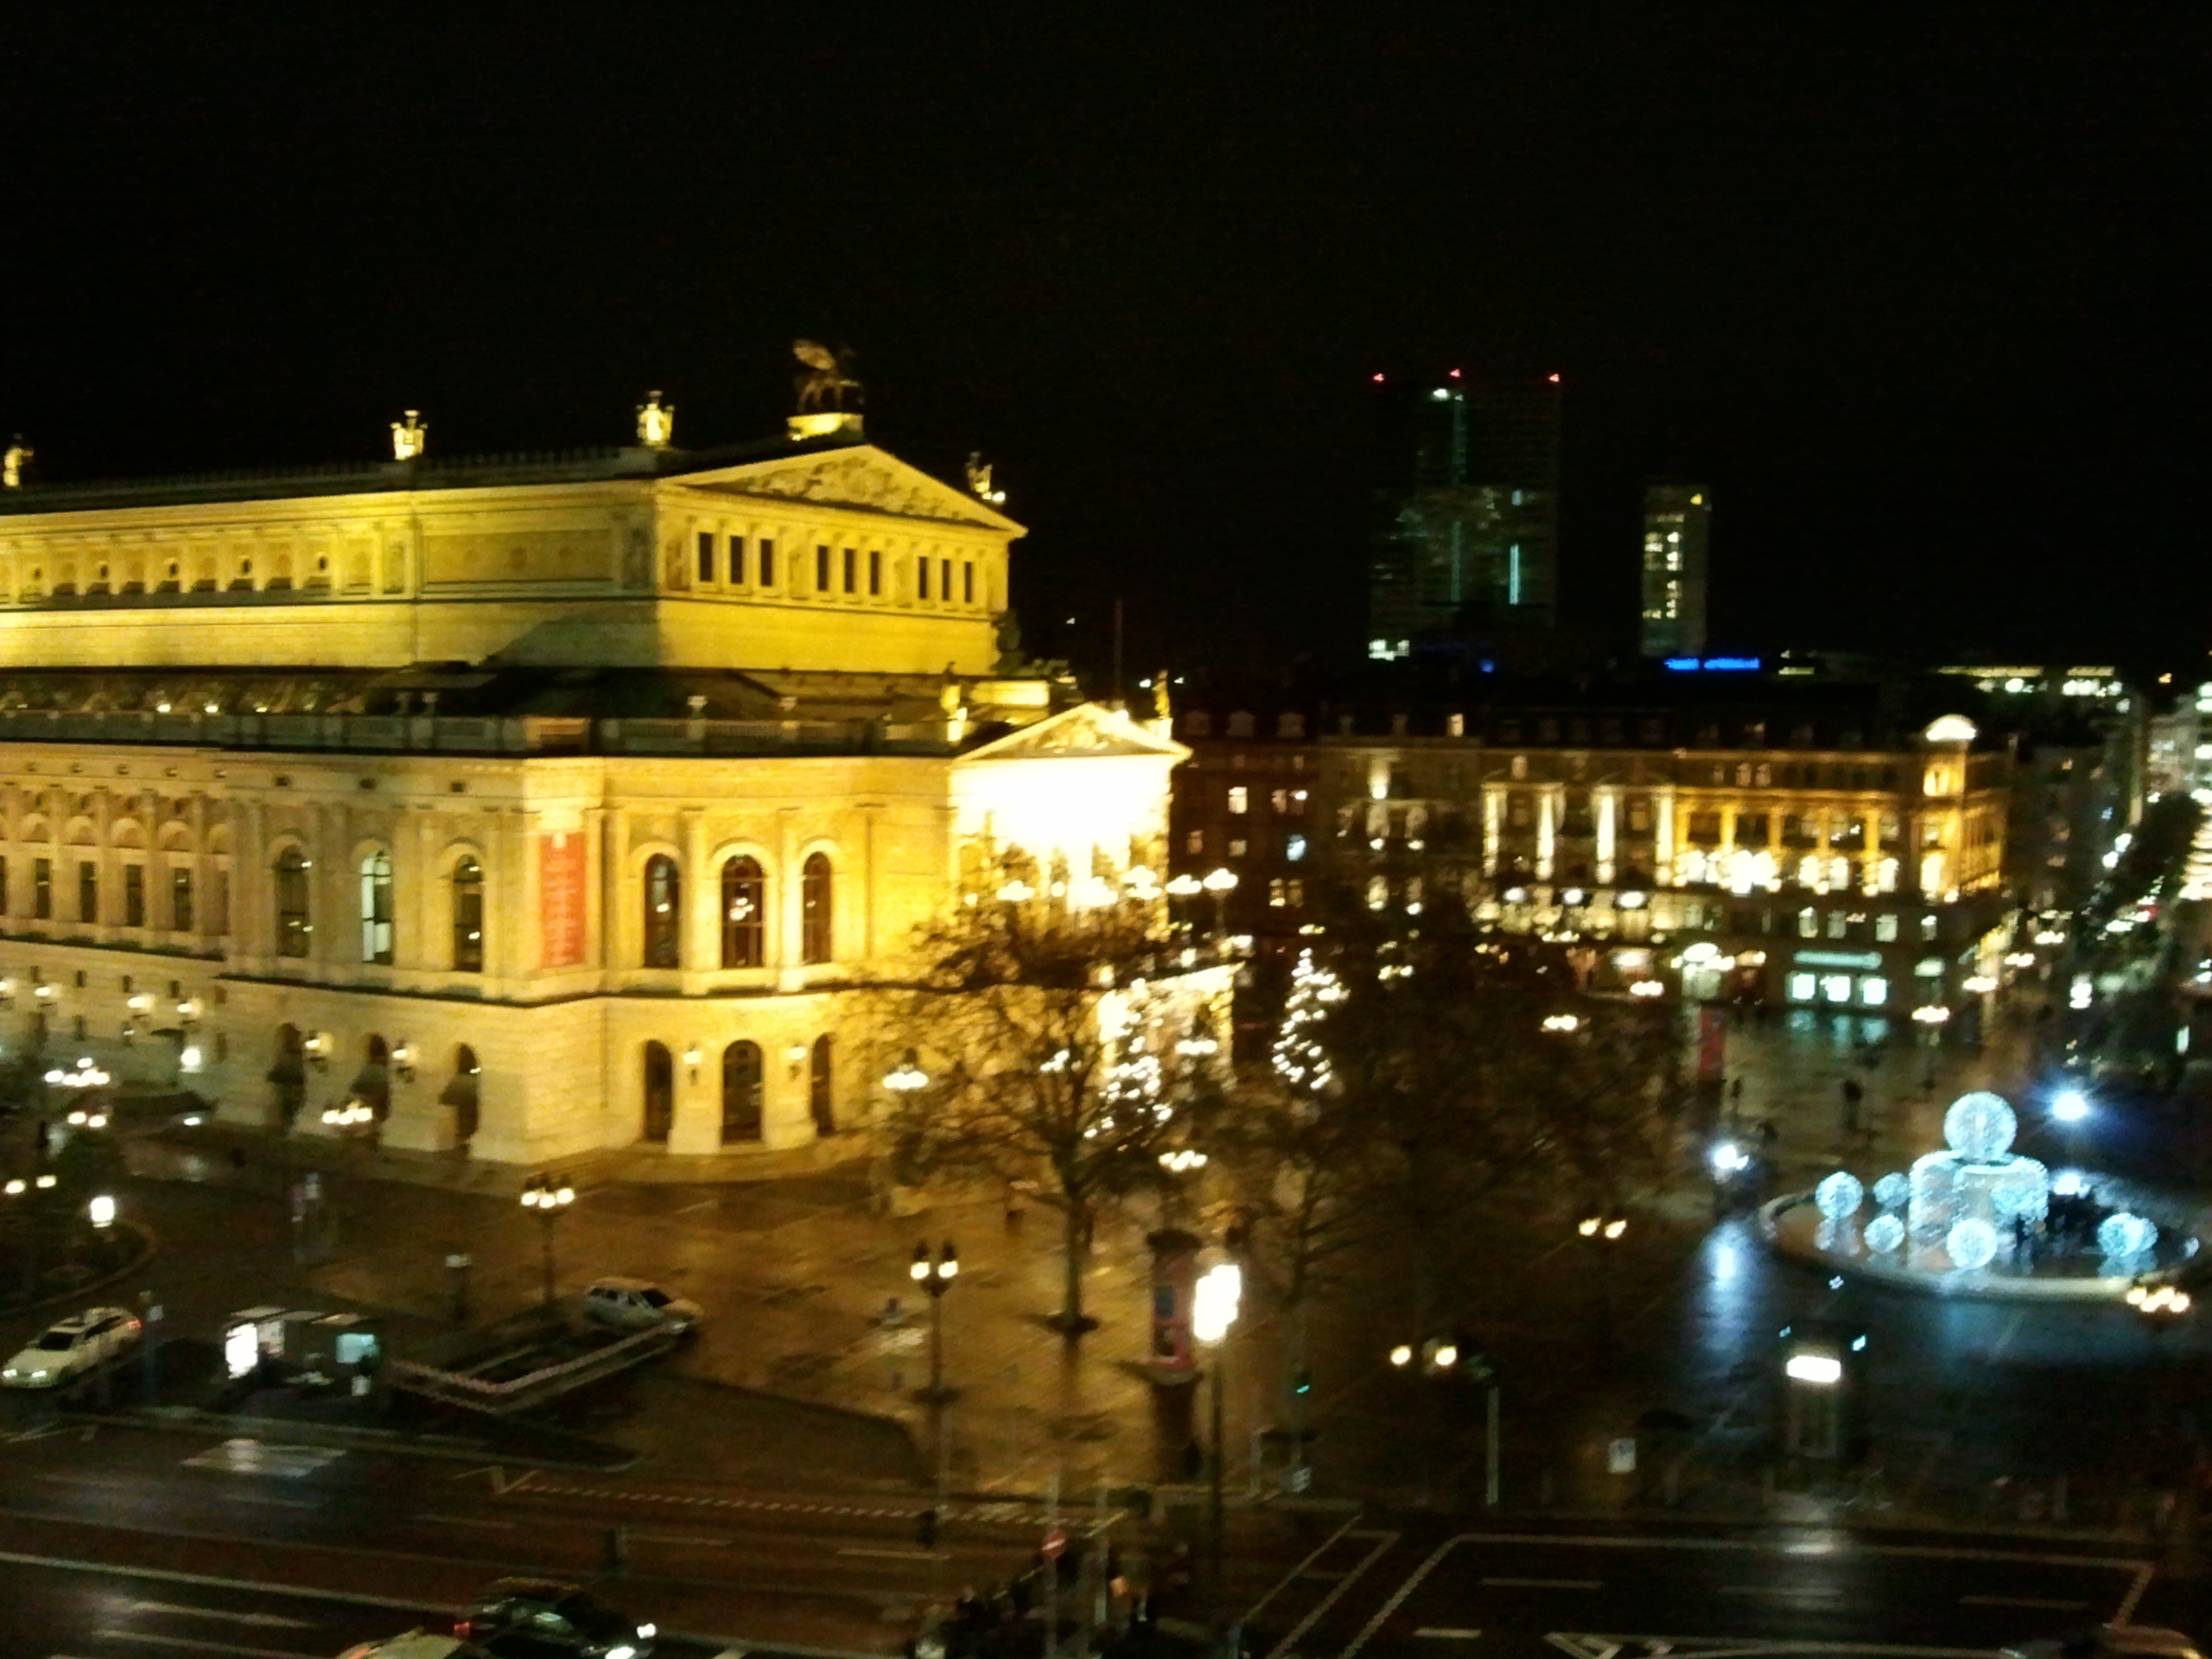 Alte Oper in Frankfurt am Main bei Nacht - kurz vor Heiligabend mit festlicher Beleuchtung.
